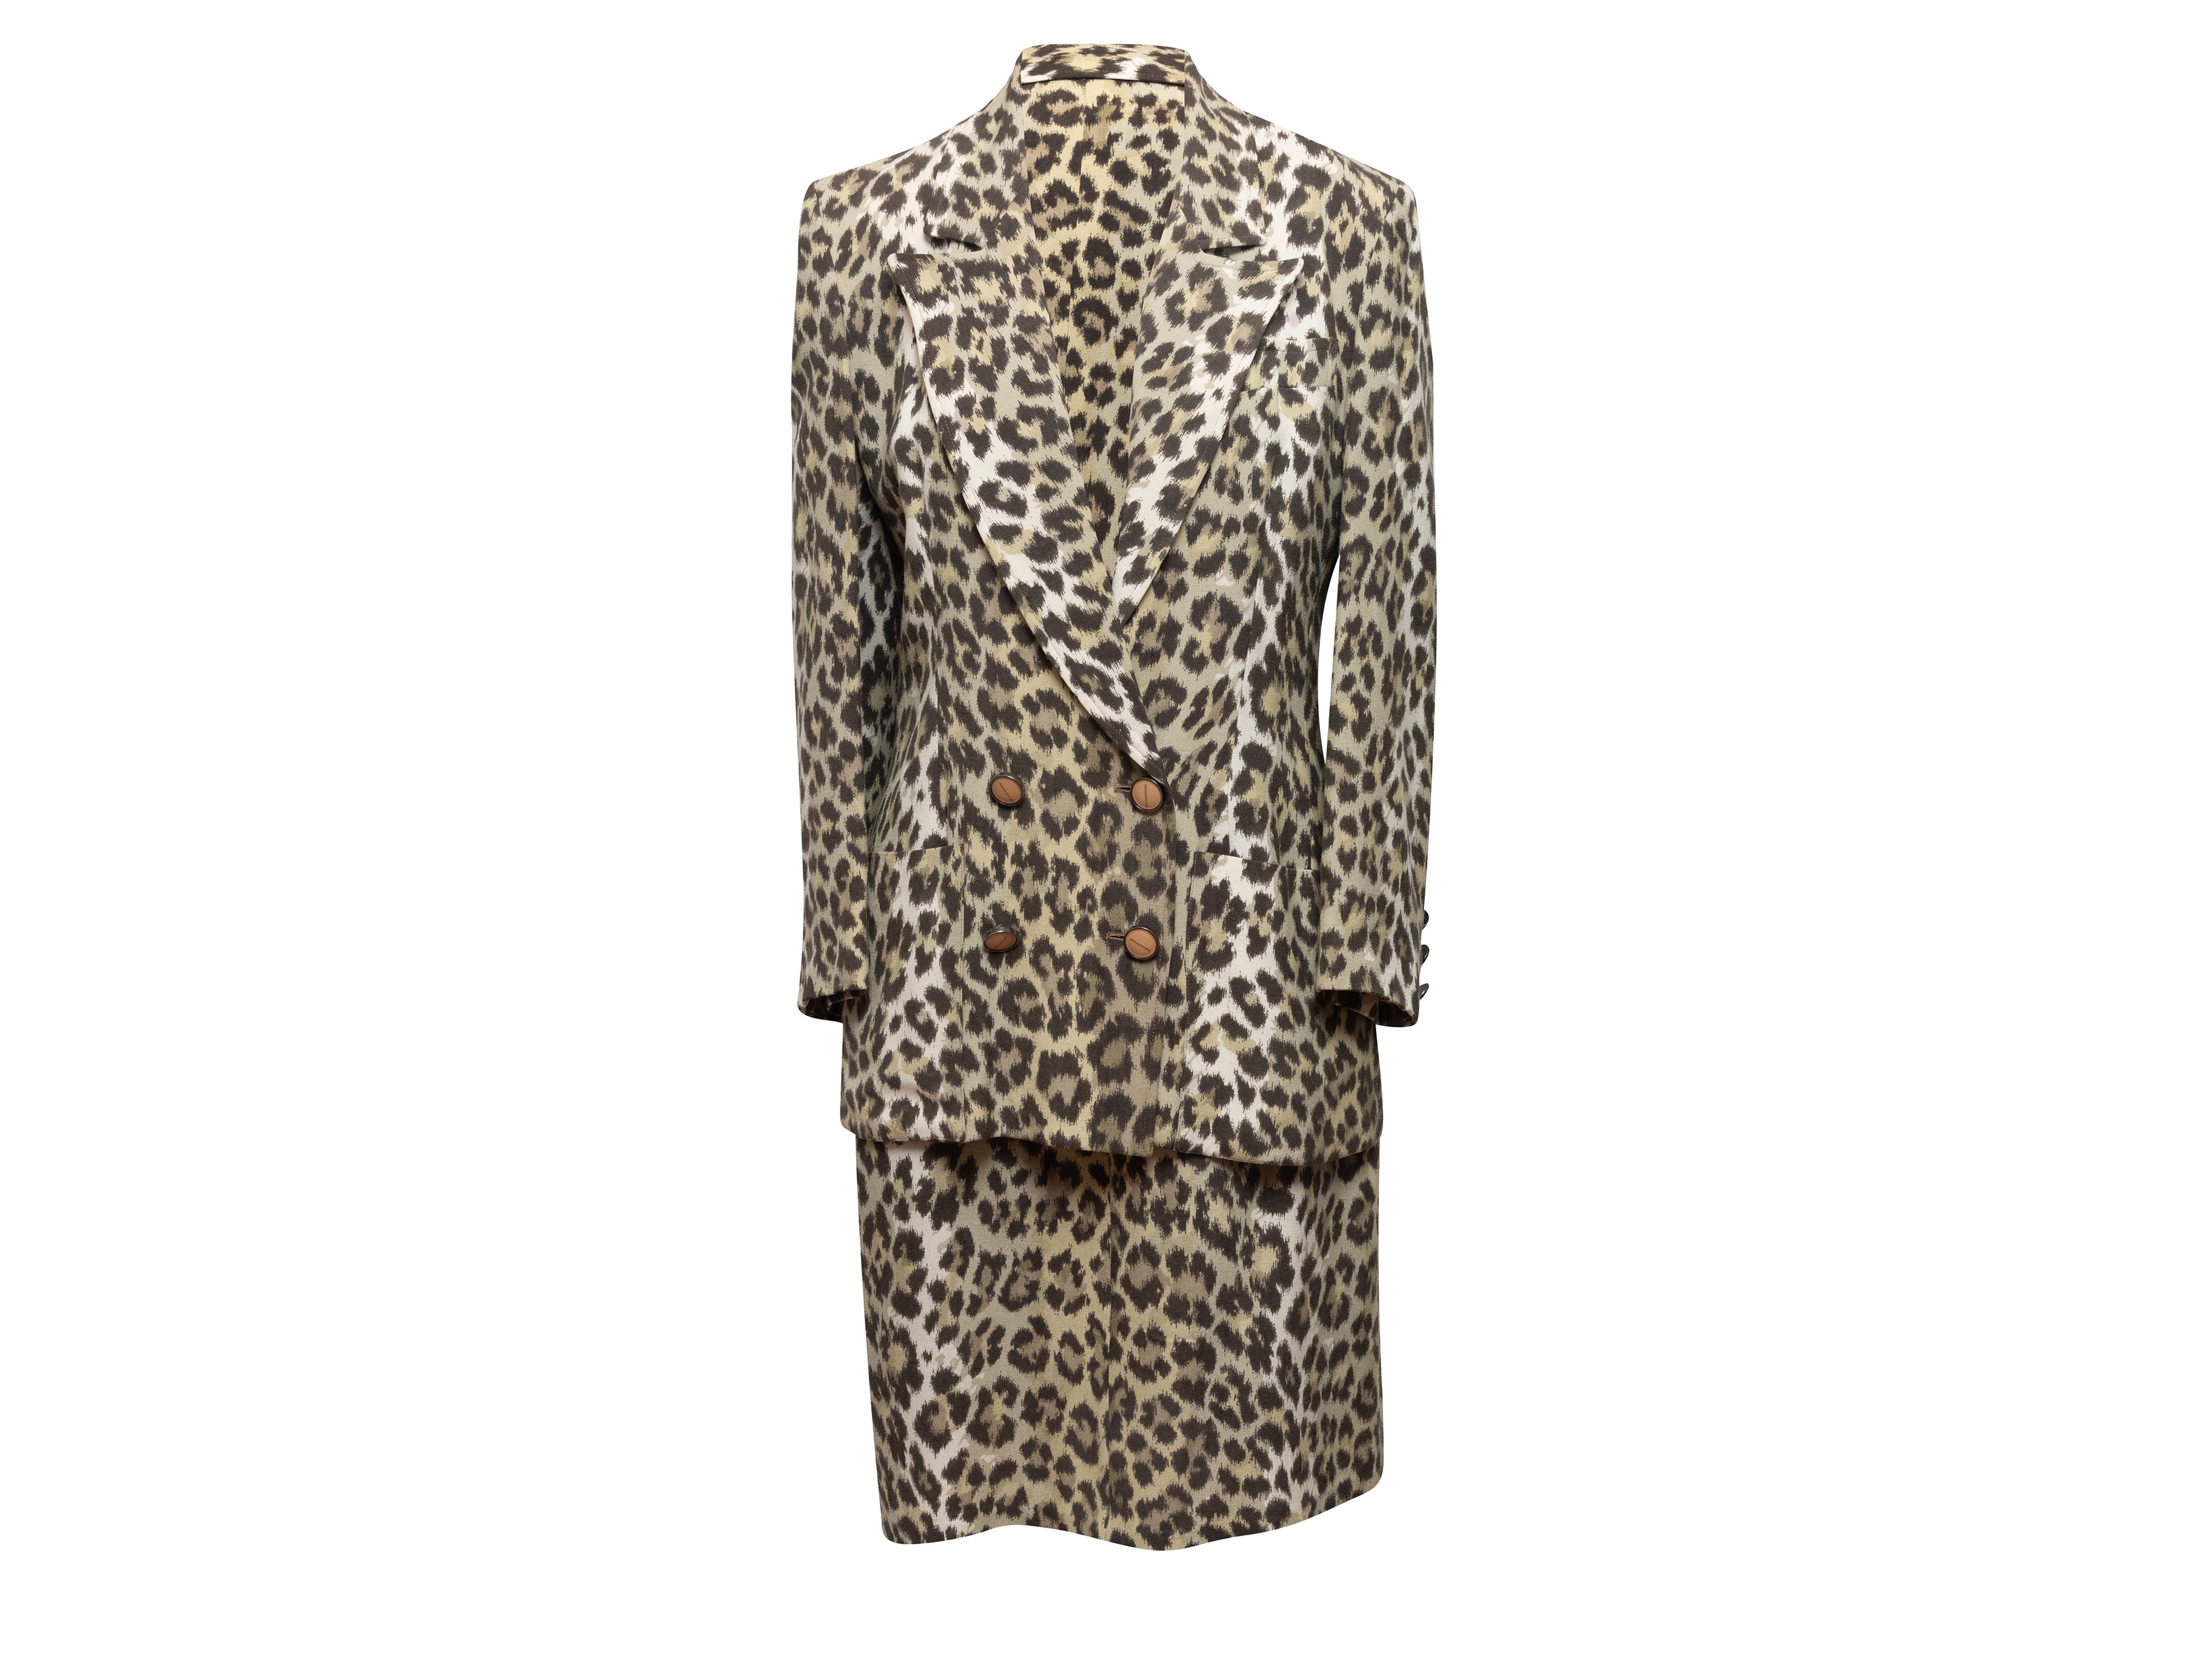 Vintage Tan & Black Jean Louis Scherrer Leopard Print Skirt Suit Size EU 40 - Designer Revival